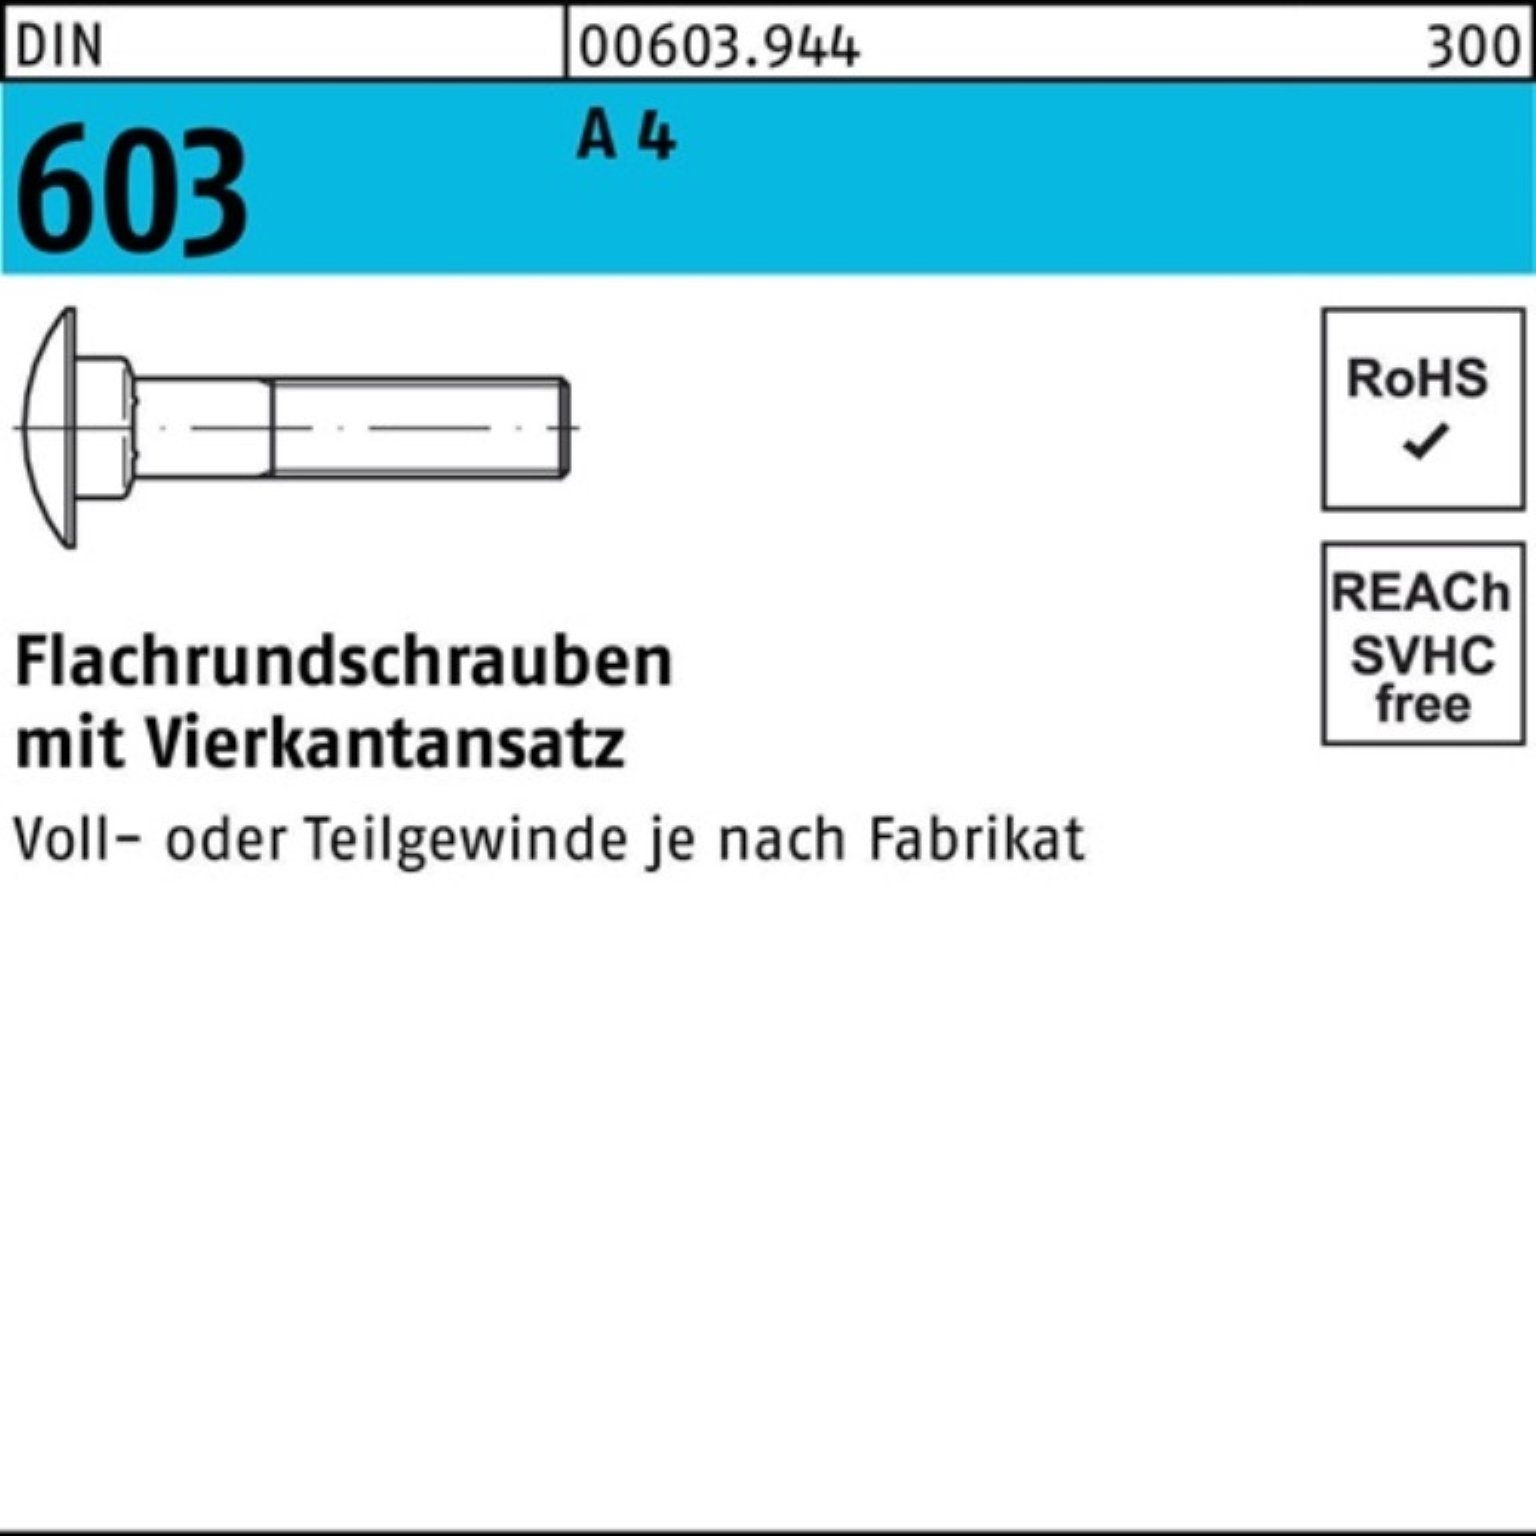 Reyher Schraube 100er Pack Flachrundschraube DIN 603 Vierkantansatz M16x 80 A 4 1 Stü